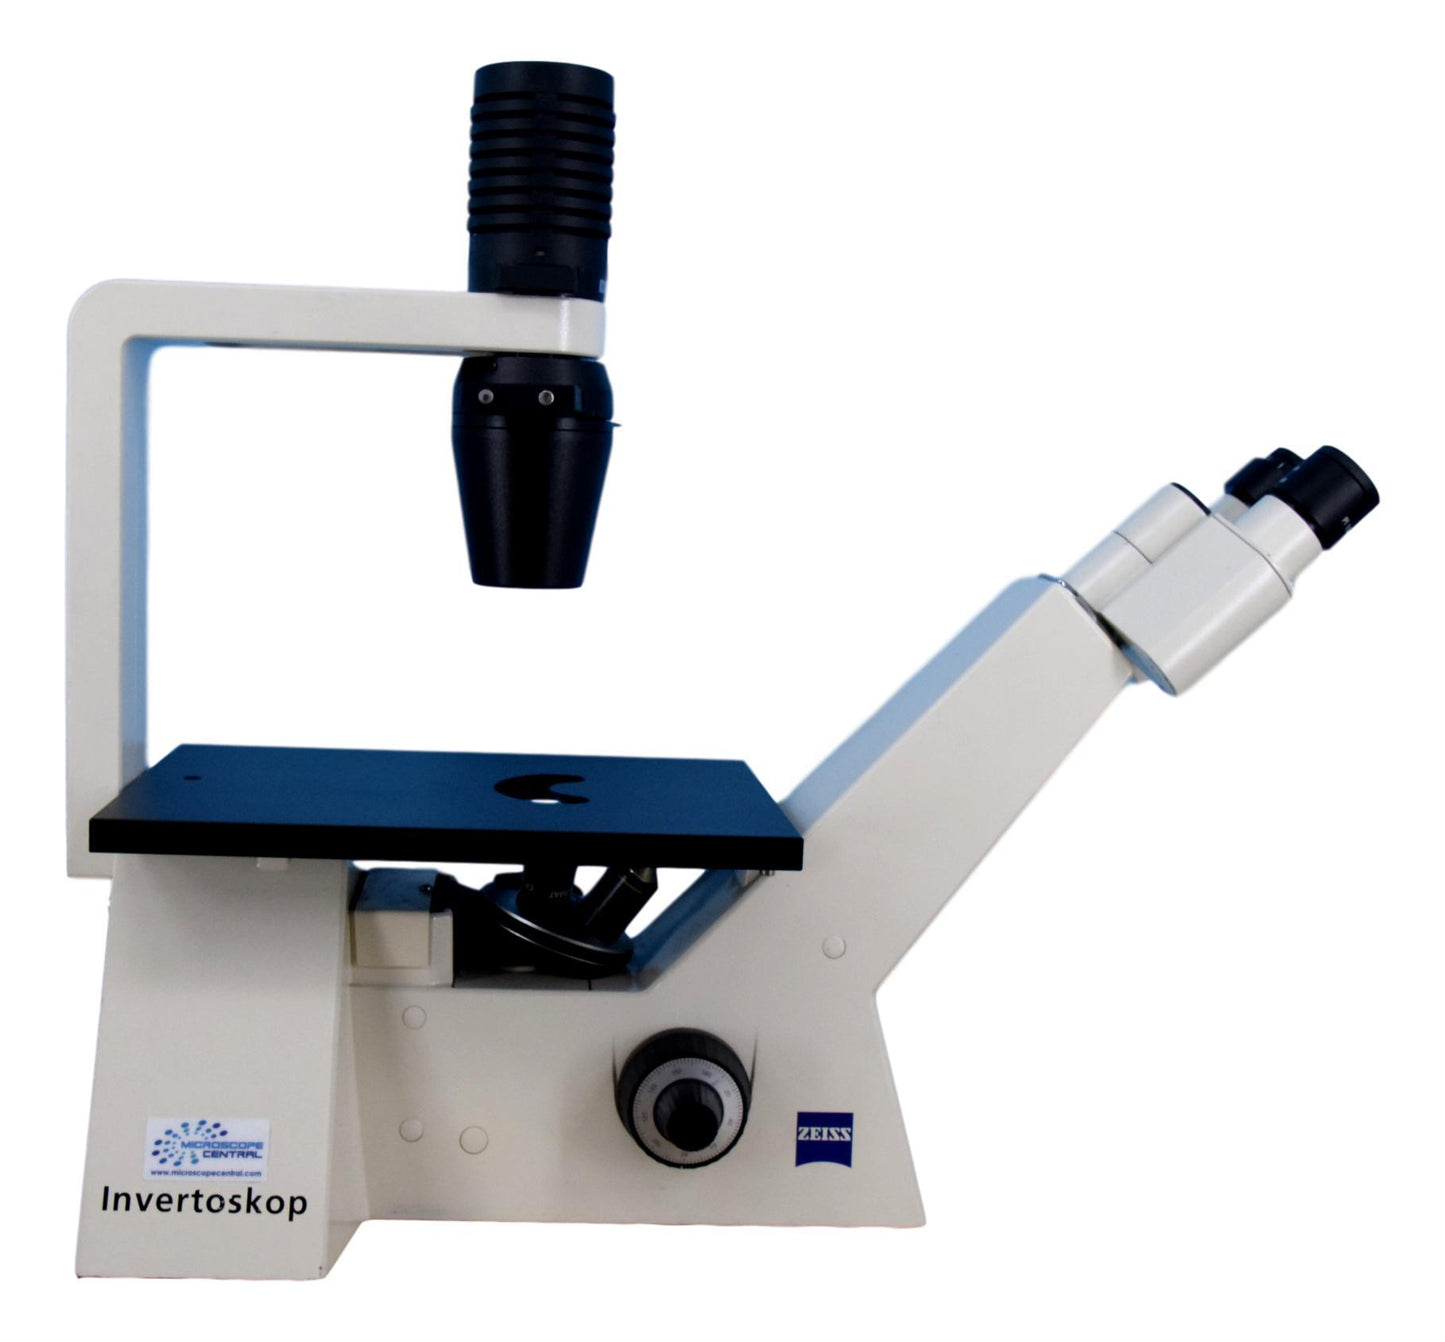 Zeiss Invertoskop Microscope